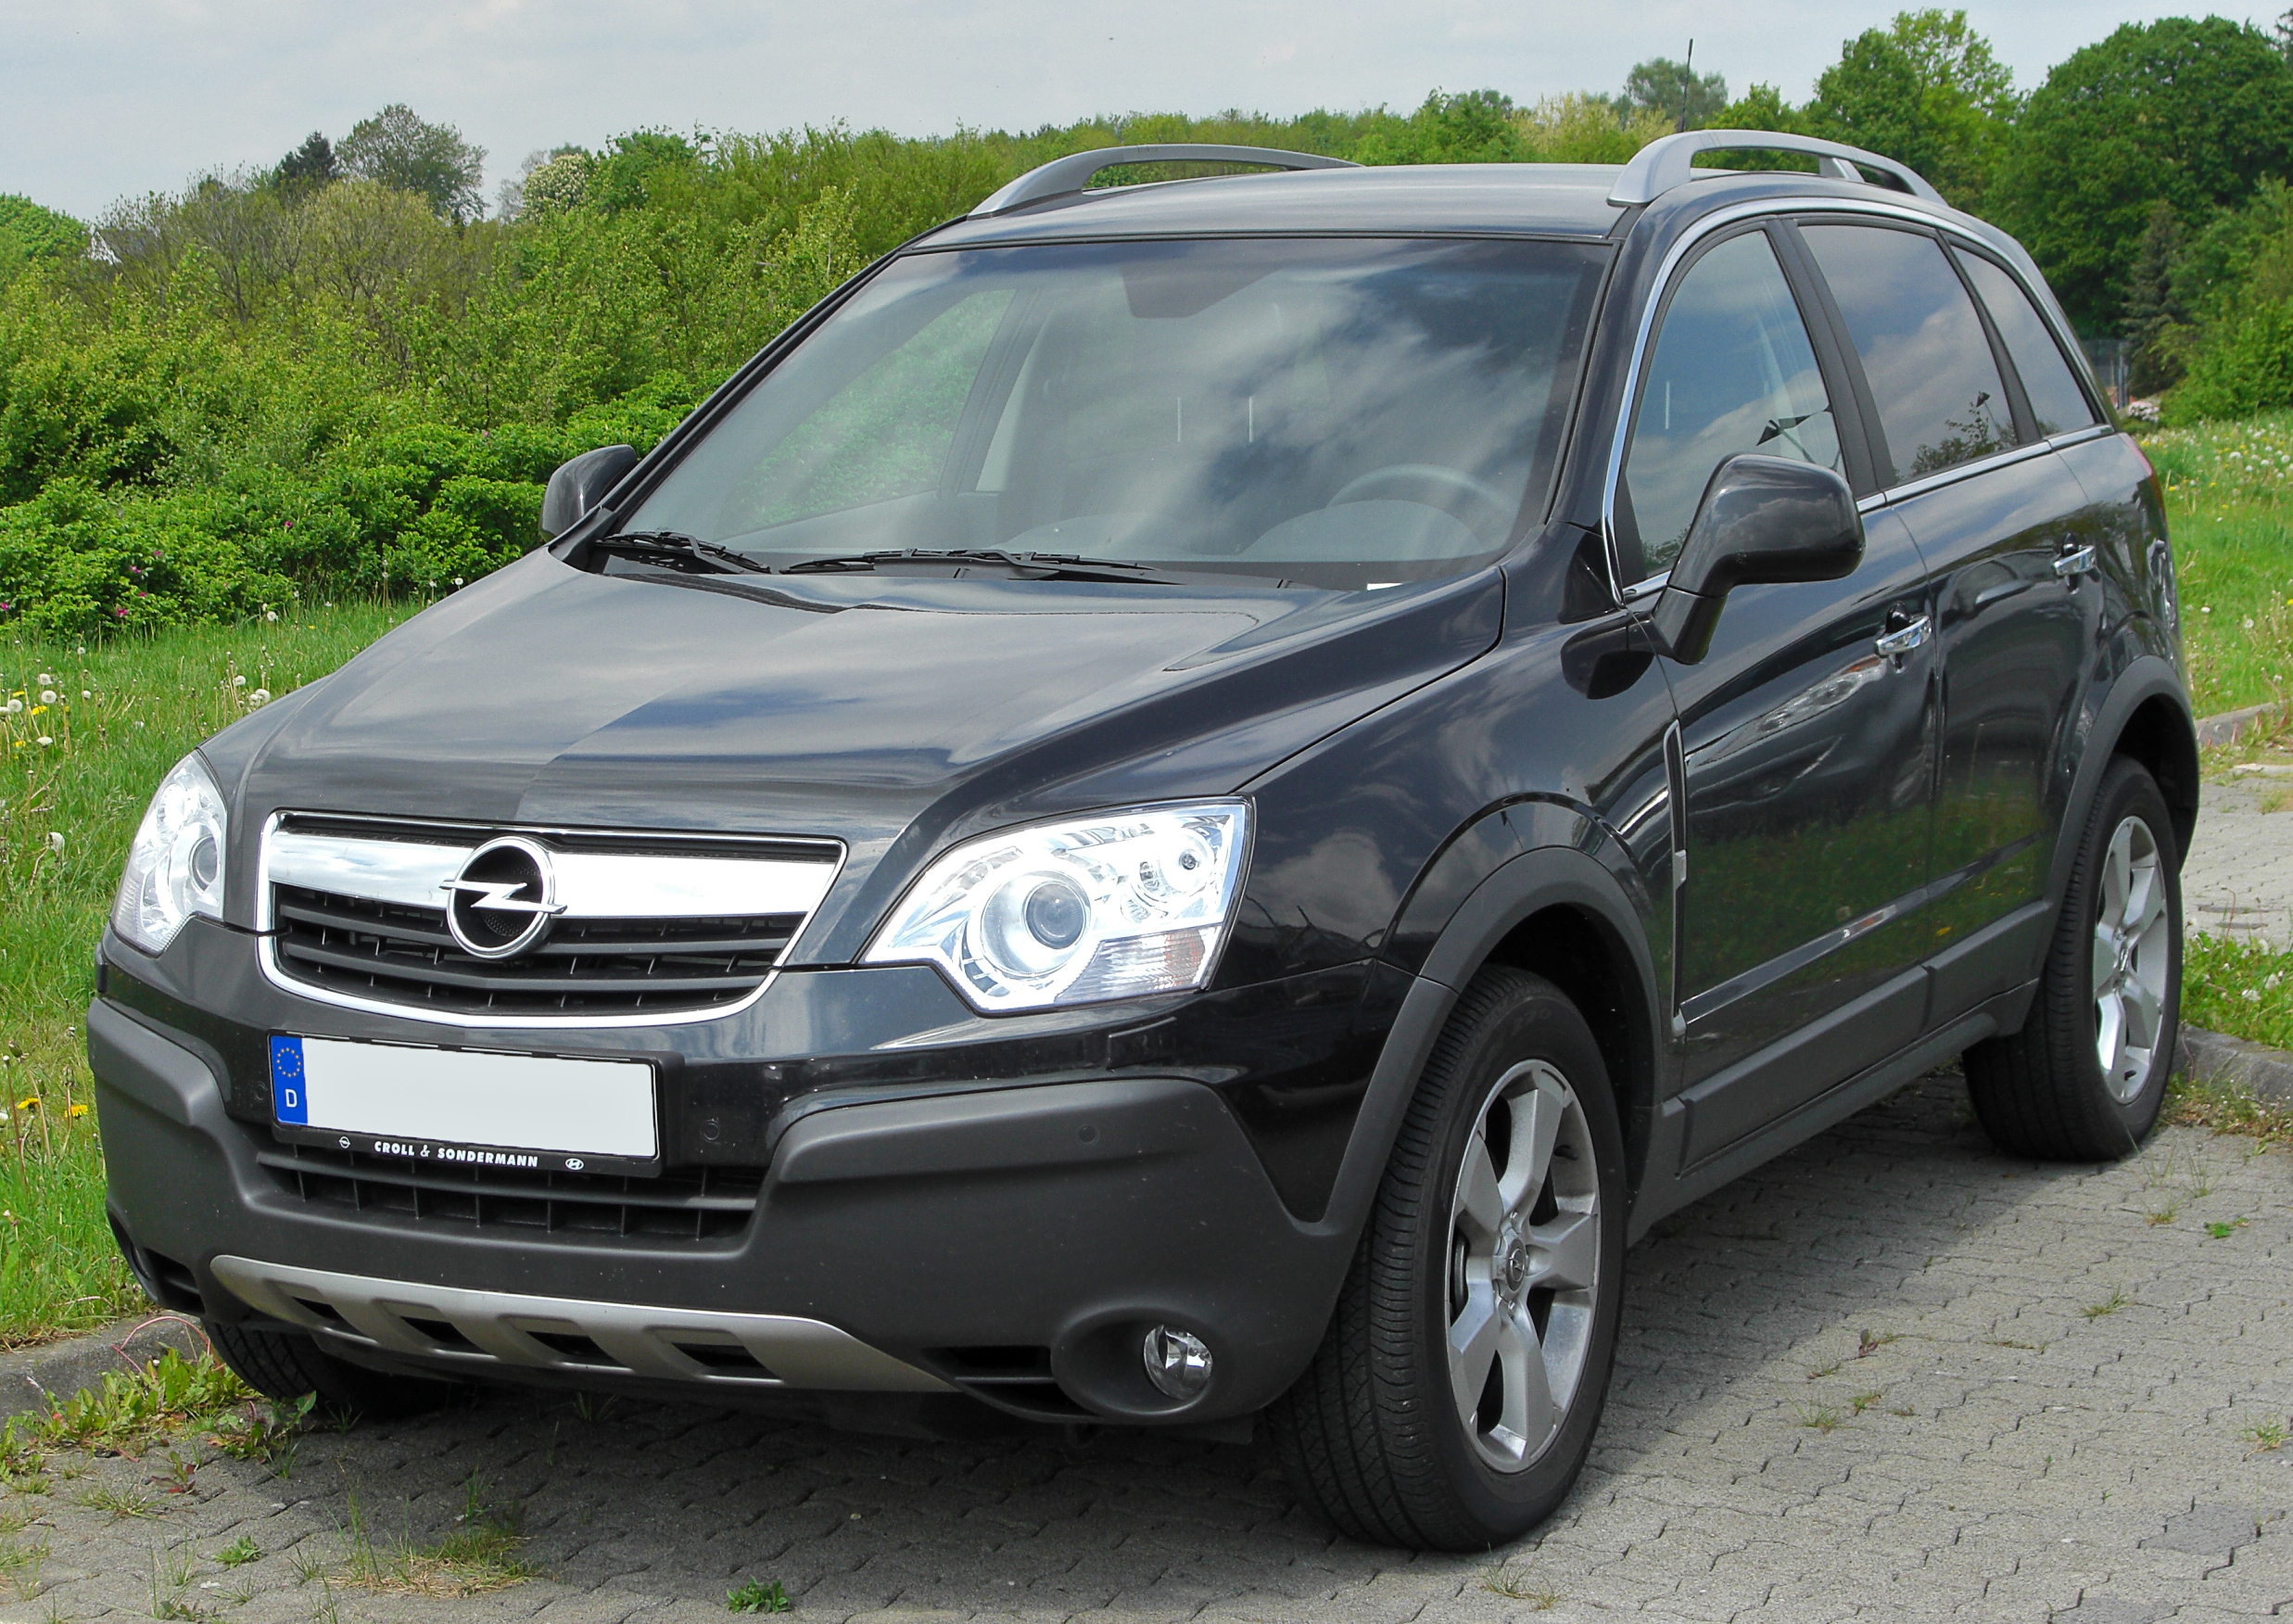 File:Opel Astra J Modellpflege Front.jpg - Wikipedia